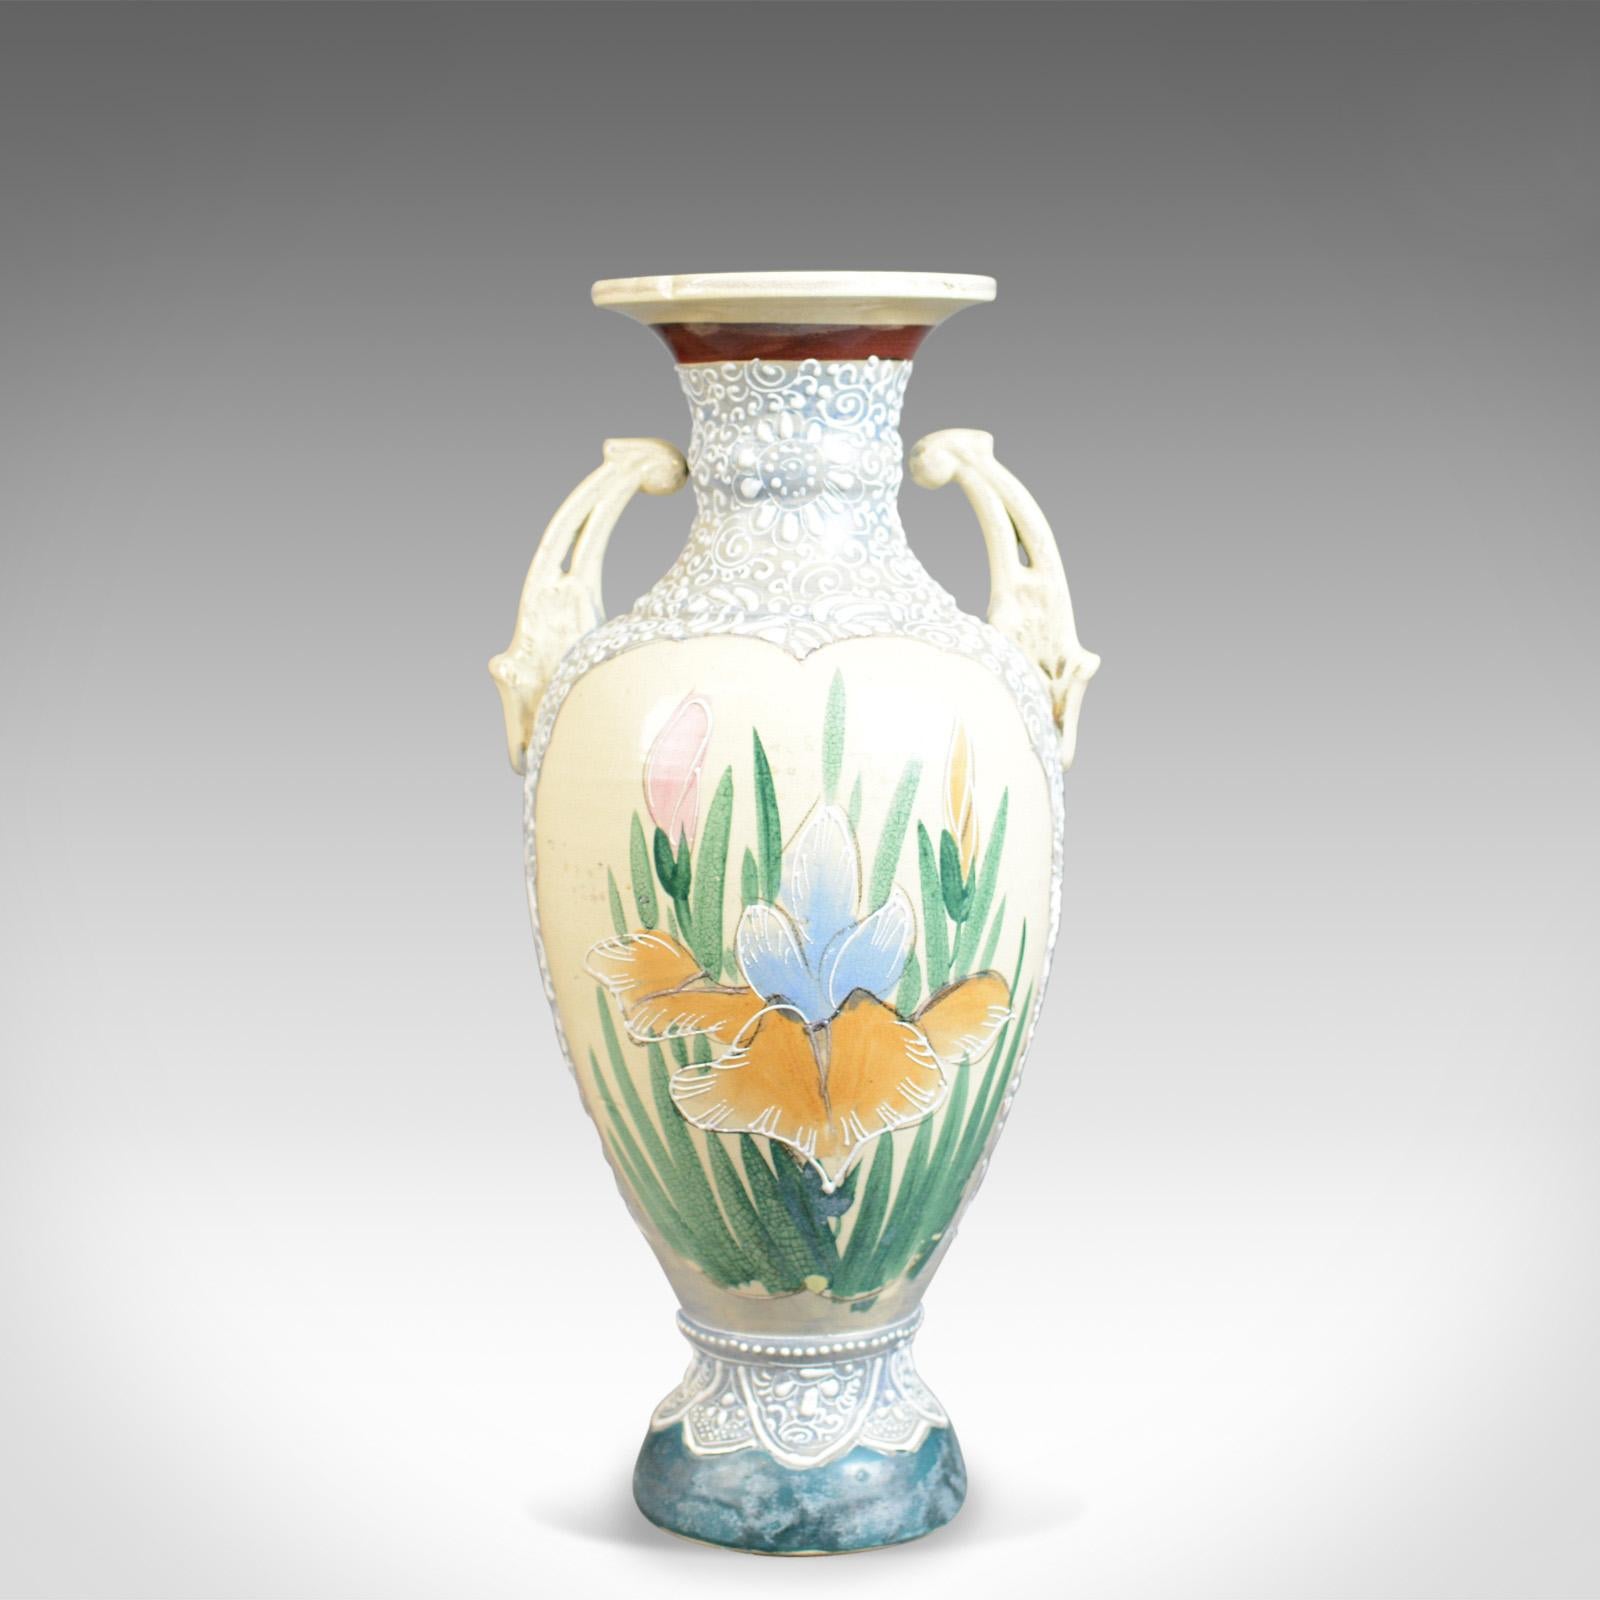 Il s'agit d'un grand vase balustre japonais vintage, une urne en céramique orientale hautement décorée datant du milieu et de la fin du 20e siècle.

De forme classique et en bonne proportion
De qualité artisanale, sans dommage
Marque du